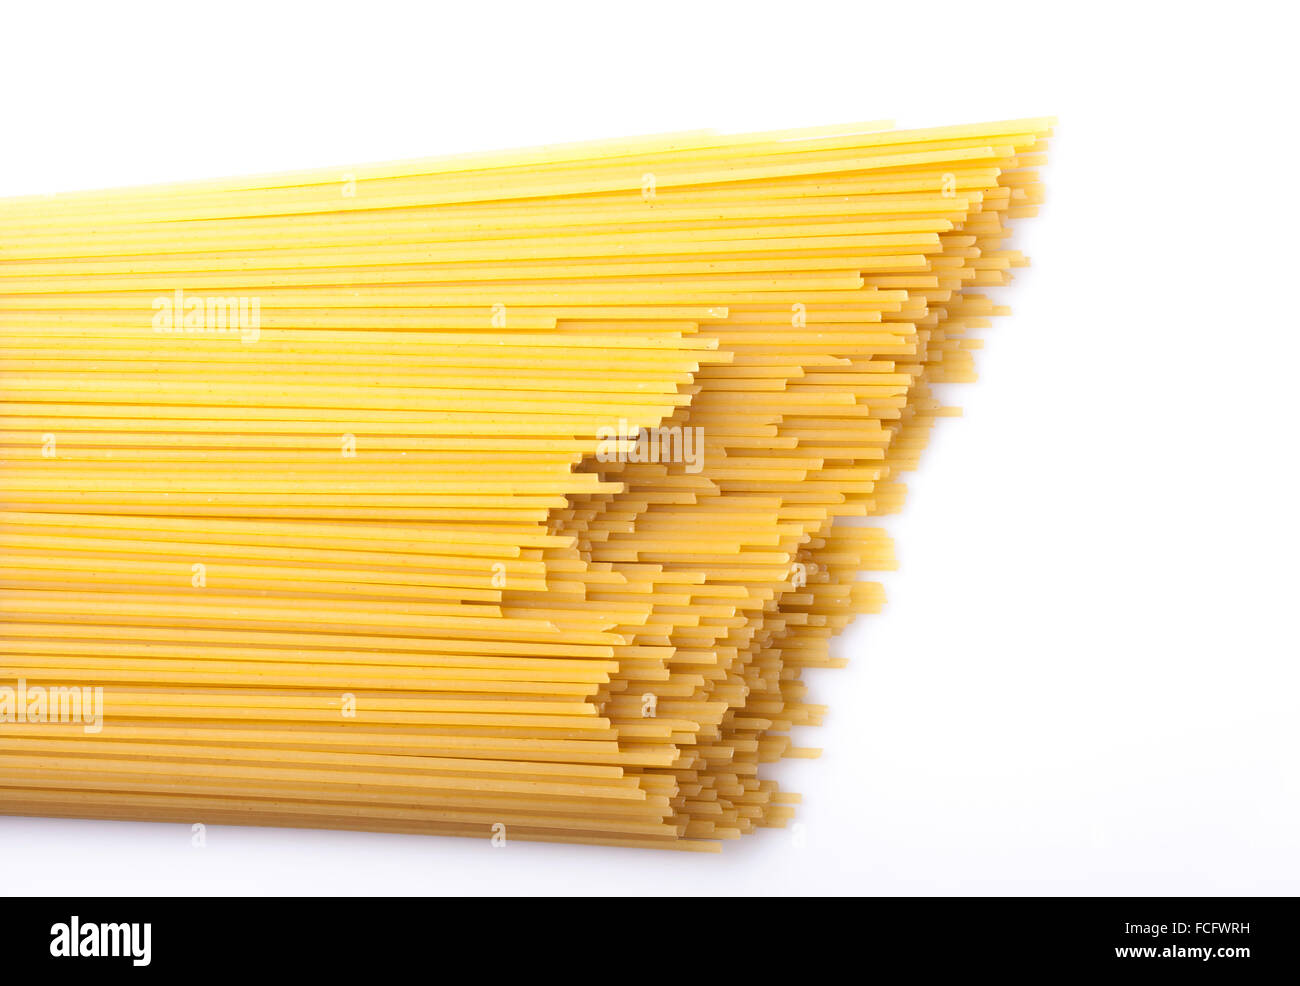 italian spaghetti on white background closeup Stock Photo